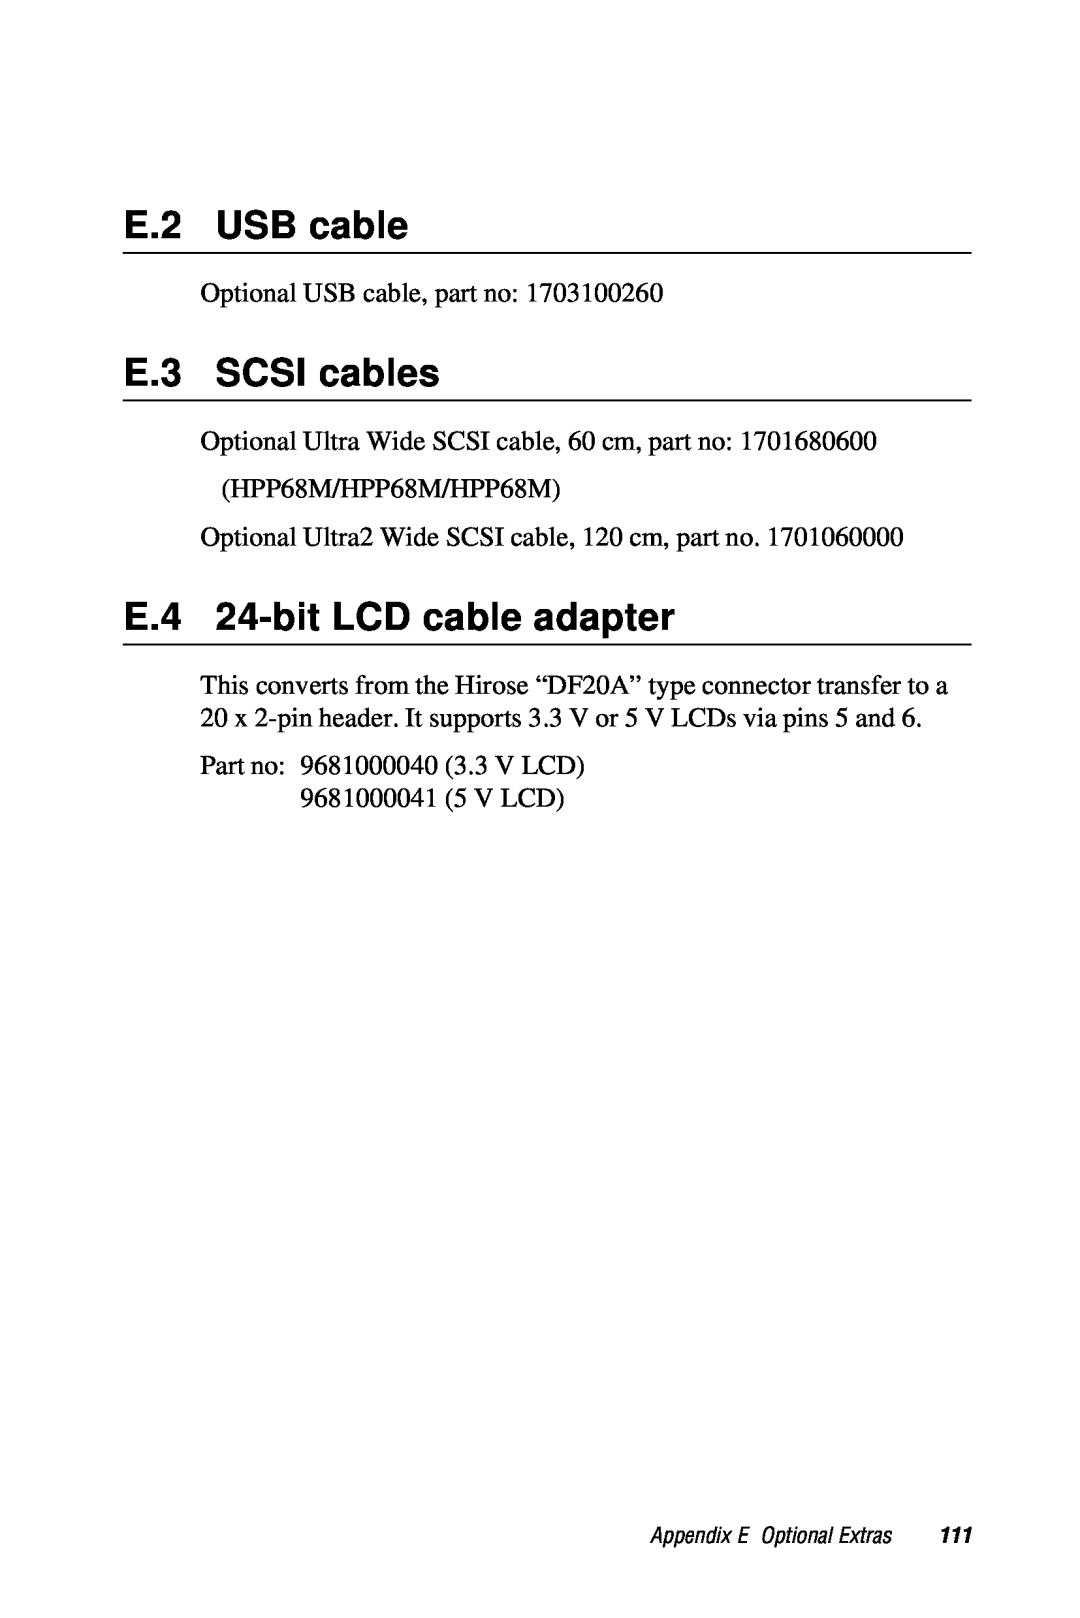 Advantech 2006957006 5th Edition user manual E.2 USB cable, E.3 SCSI cables, E.4 24-bit LCD cable adapter 